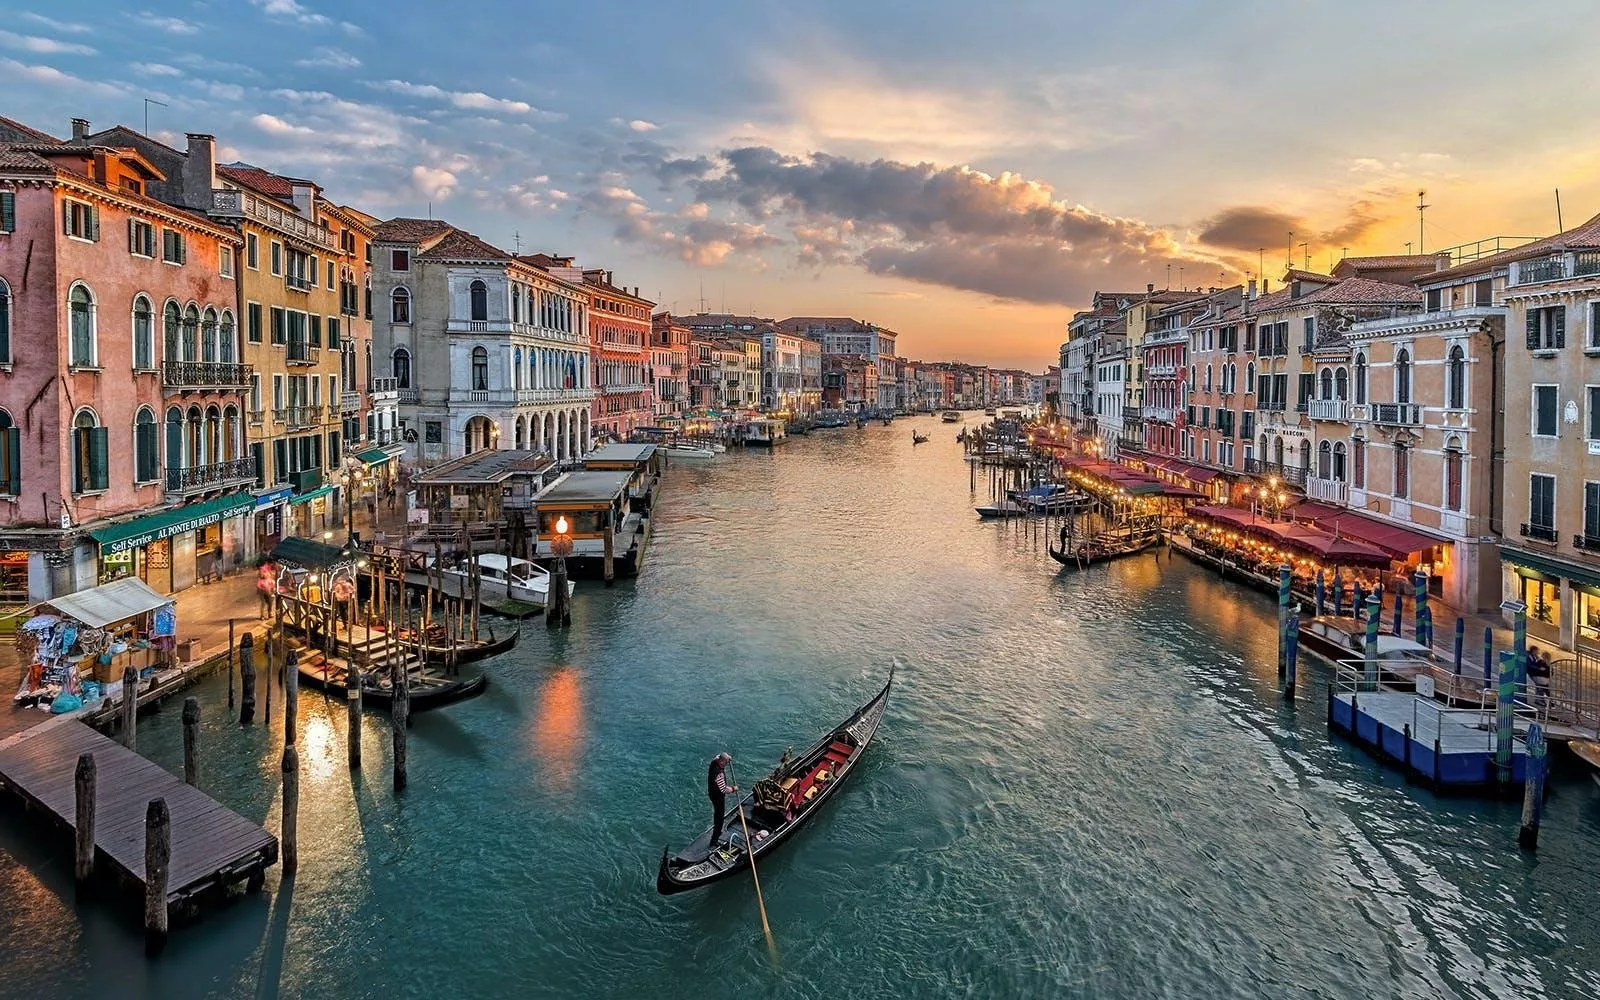 ما هي افضل الاماكن السياحية في ايطاليا التي يمكن زيارتها؟